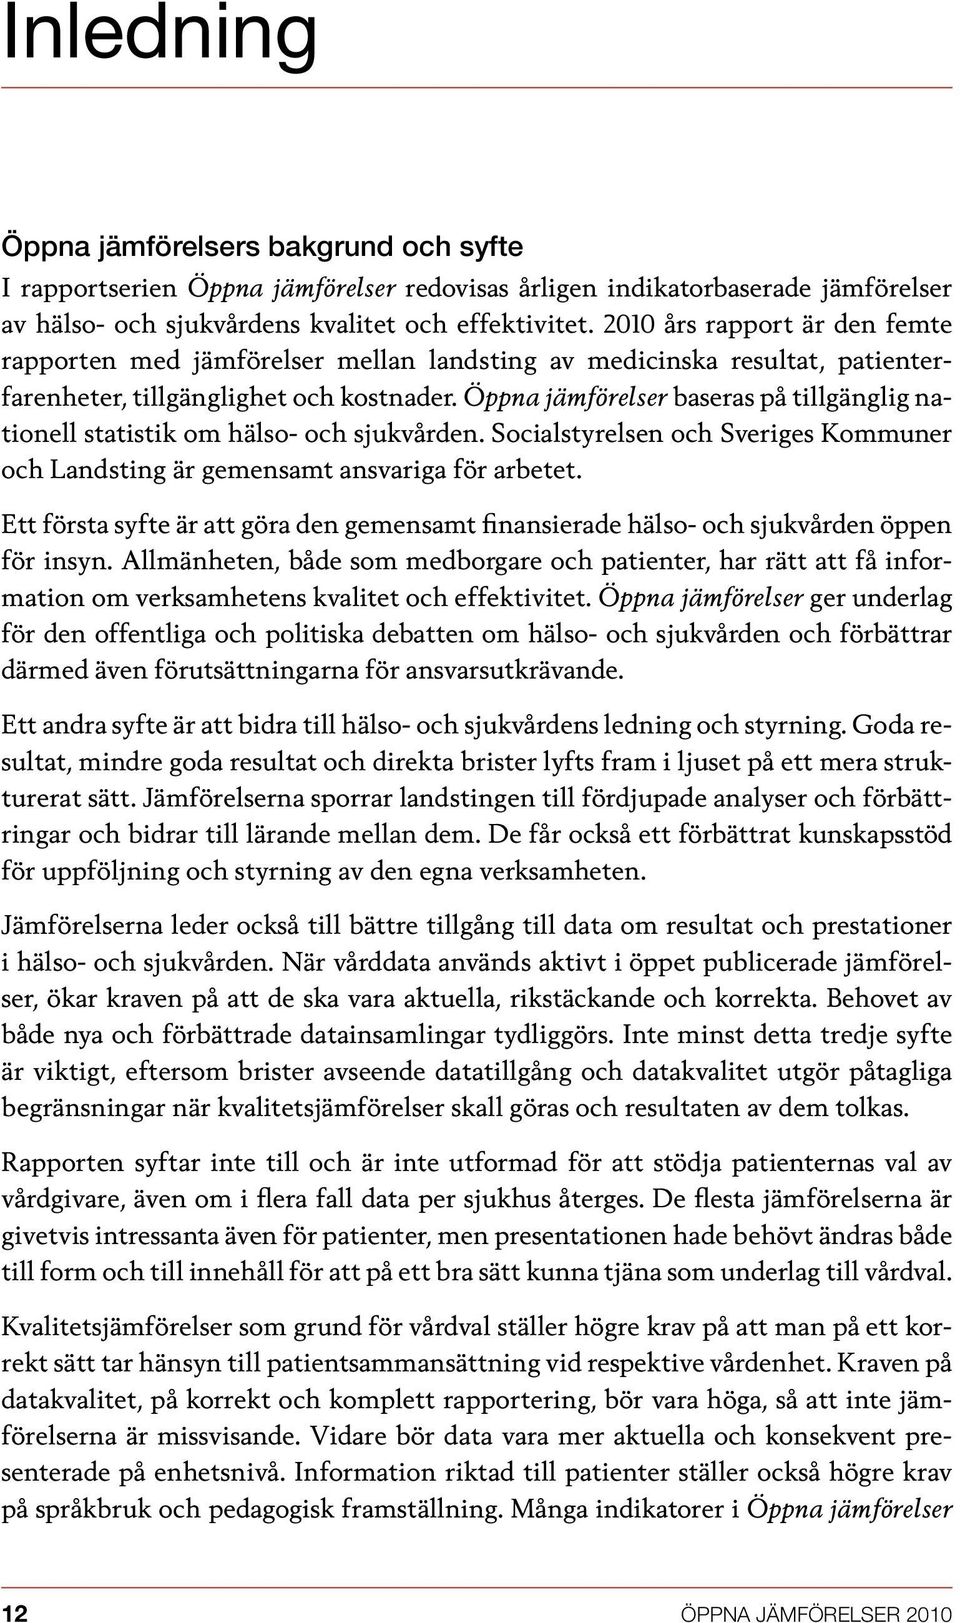 Öppna jämförelser baseras på tillgänglig nationell statistik om hälso- och sjukvården. Socialstyrelsen och Sveriges Kommuner och Landsting är gemensamt ansvariga för arbetet.